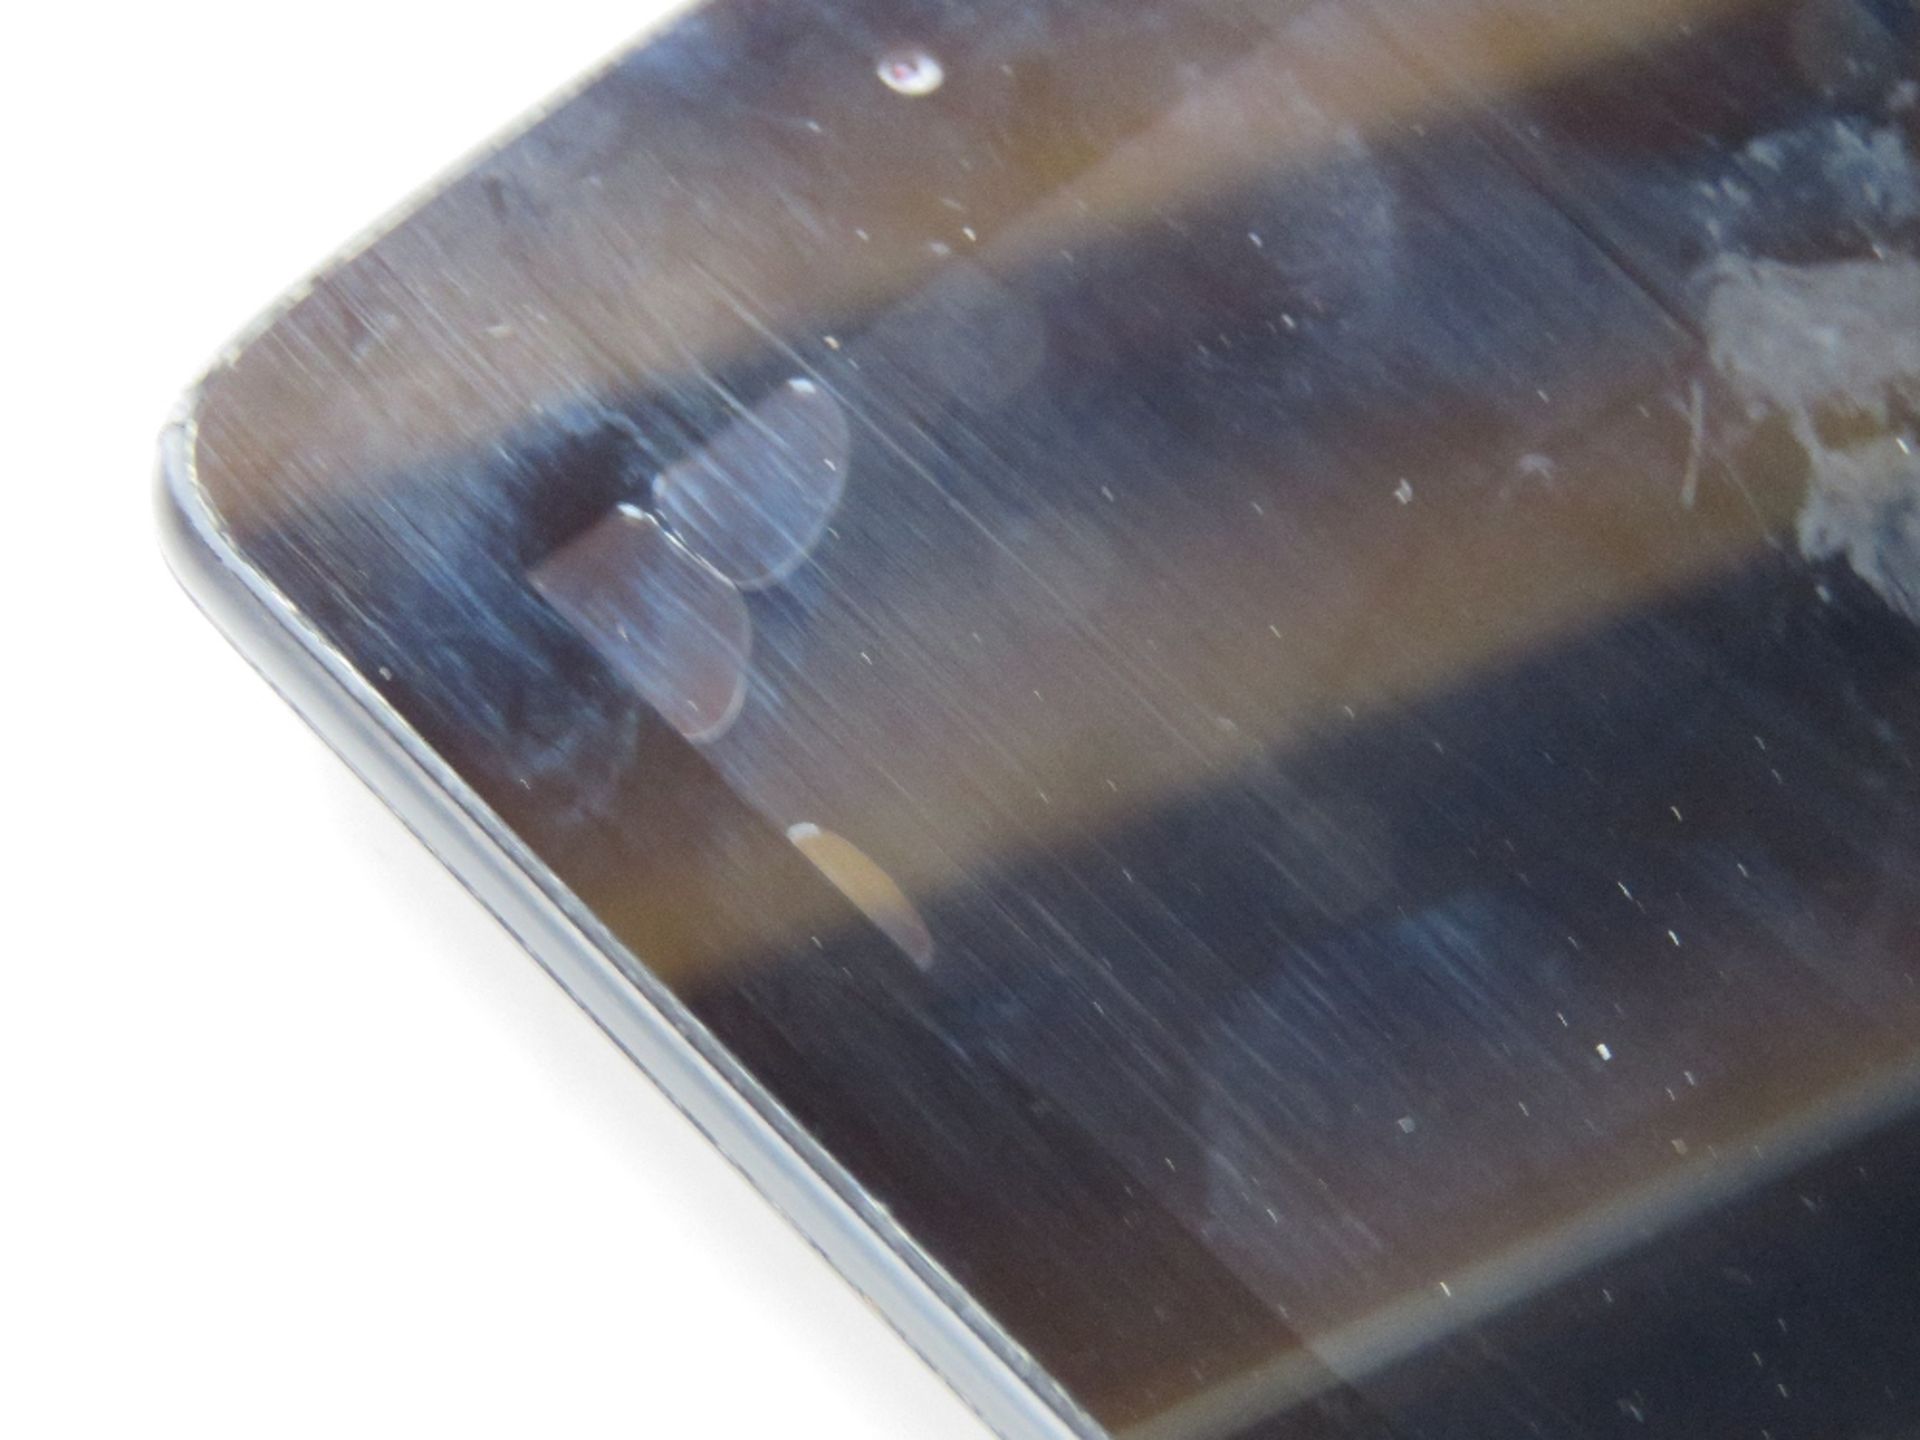 Apple iPad mini in grey model A 1432 7.9" screen. - Image 5 of 12